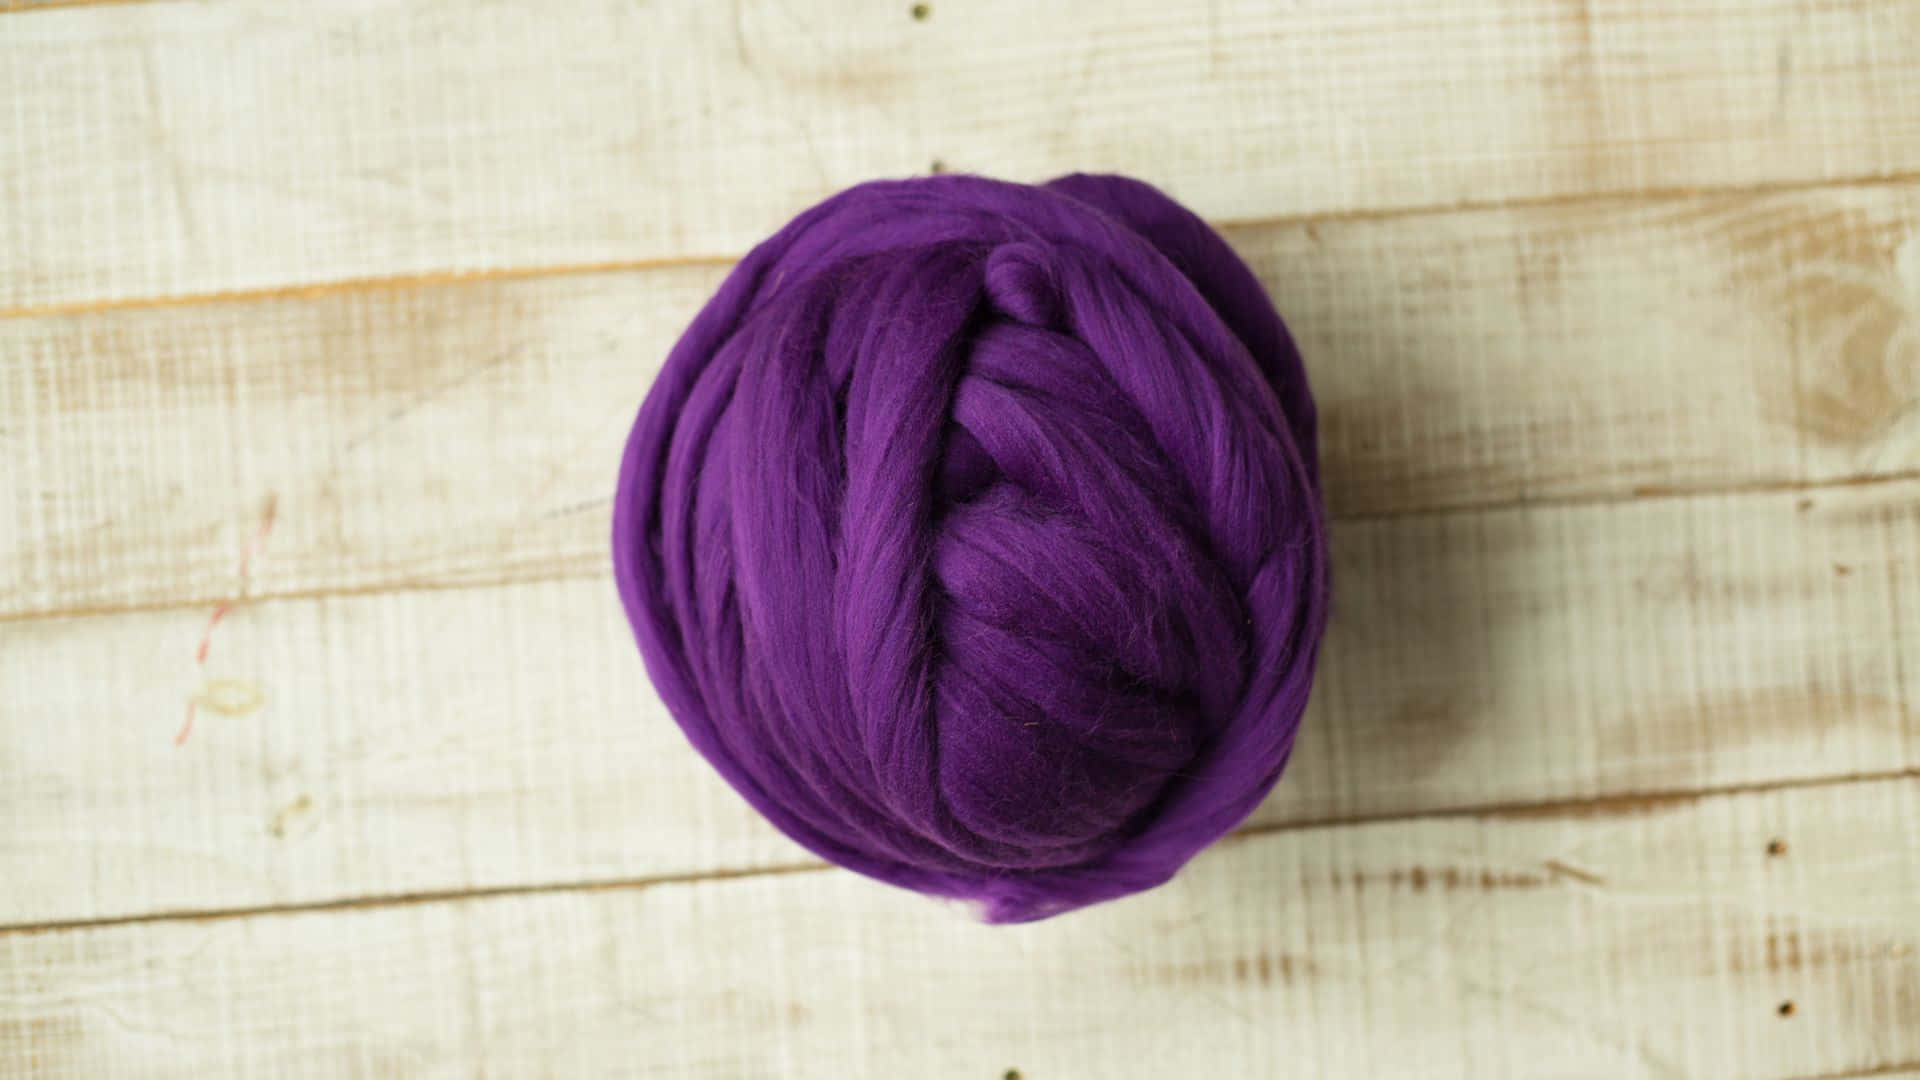 Feel the softness of purple wool Wallpaper